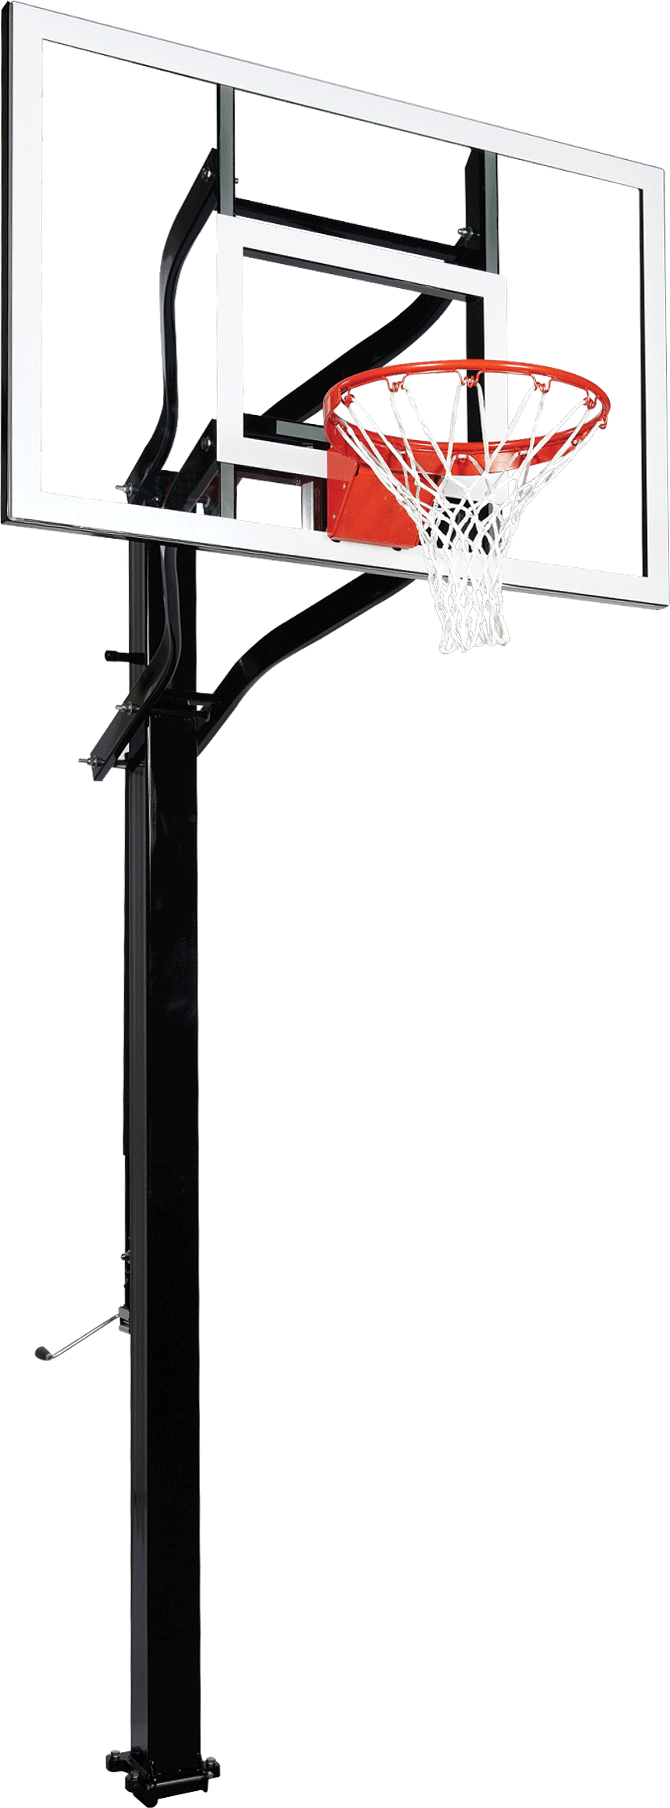 Goalsetter X554 in ground basketball hoop - Glass - Collegiate Breakaway Rim_1